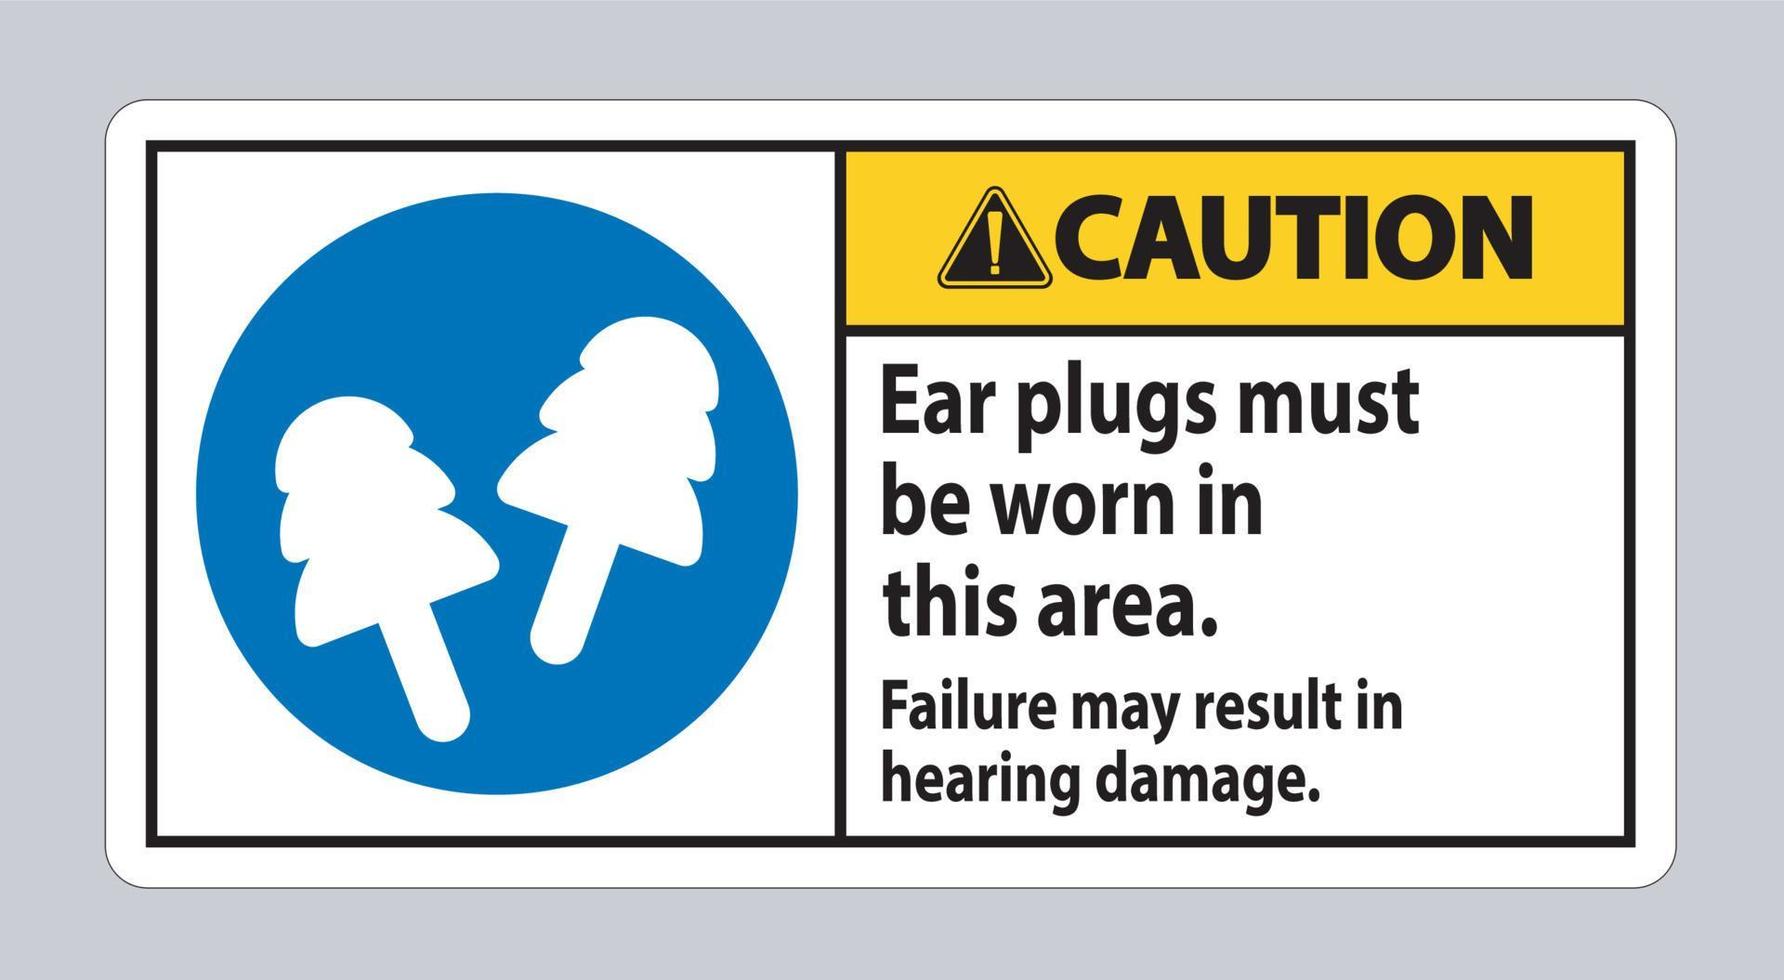 In diesem Bereich müssen Warnschild-Ohrstöpsel getragen werden. Ein Ausfall kann zu Hörschäden führen vektor